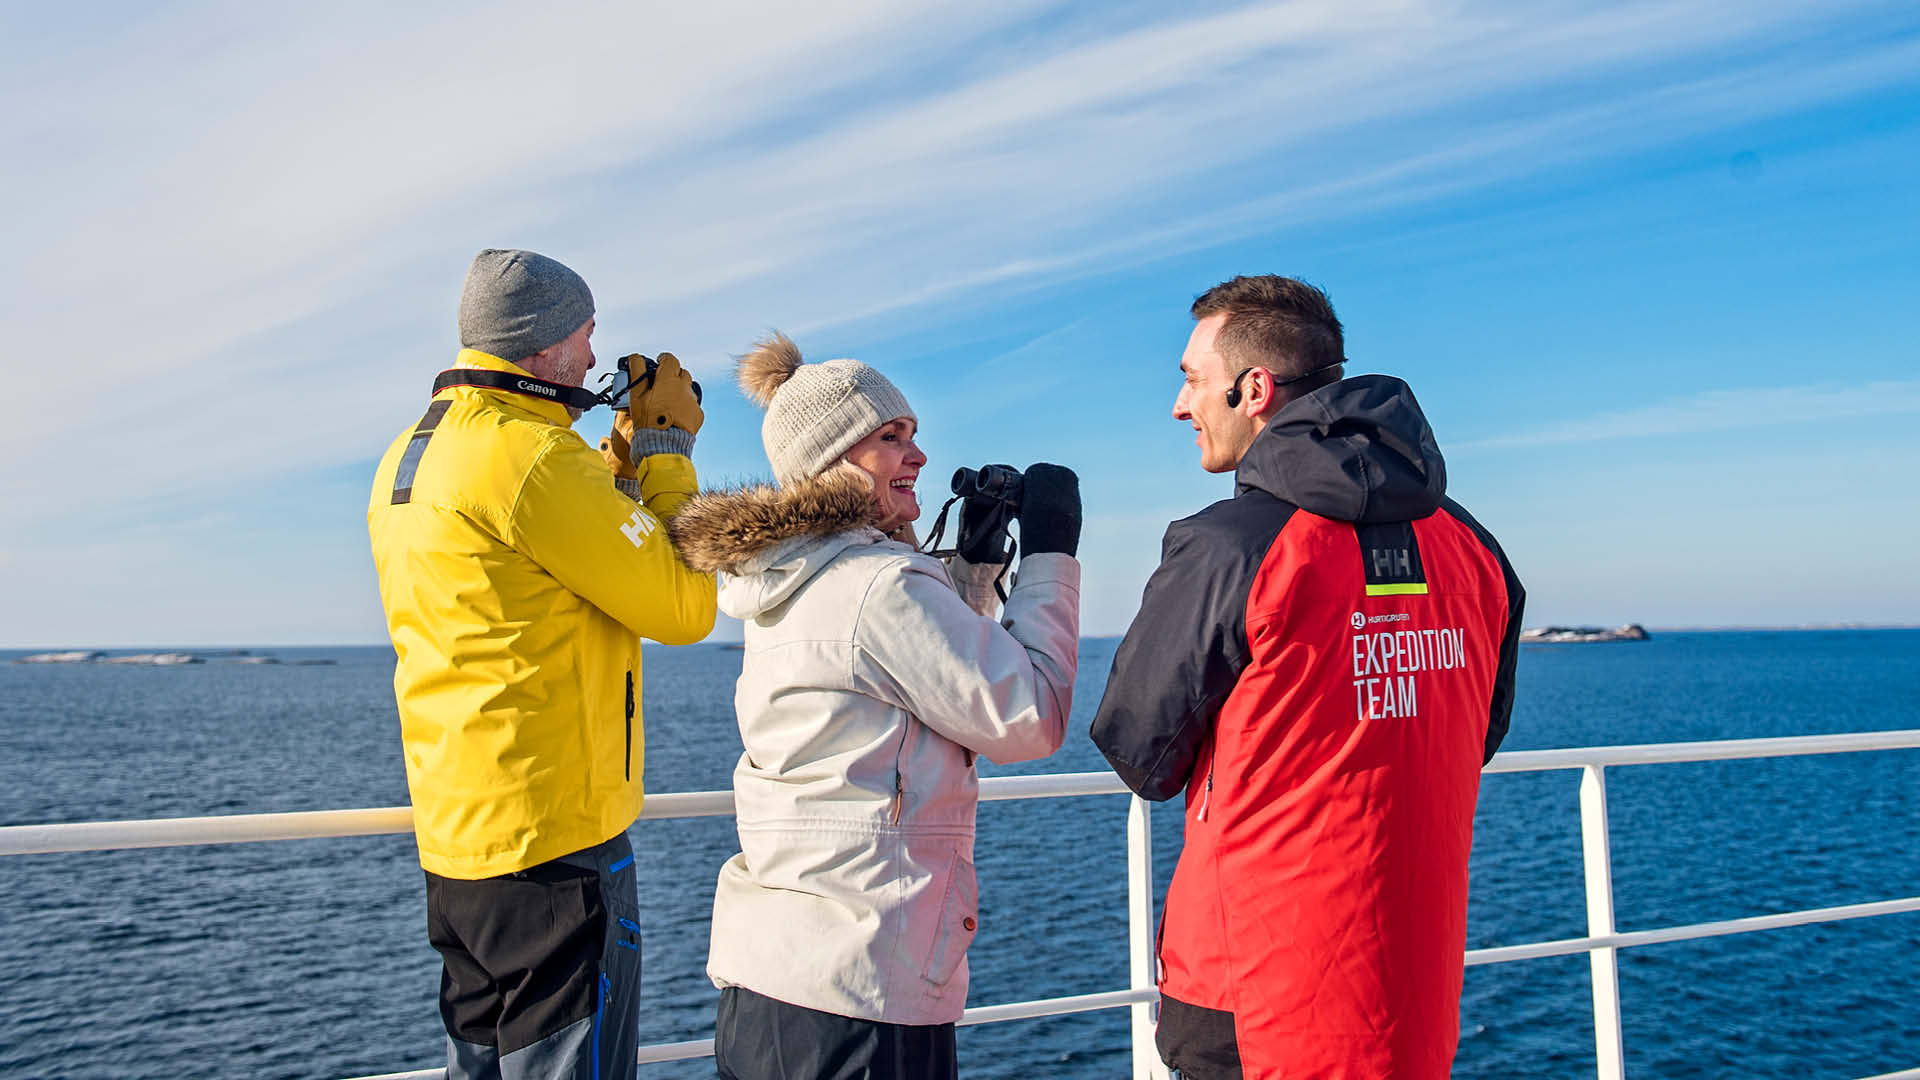 Passengers standing on deck with Expedition Team, Kong Harald, Hurtigurten Fleet